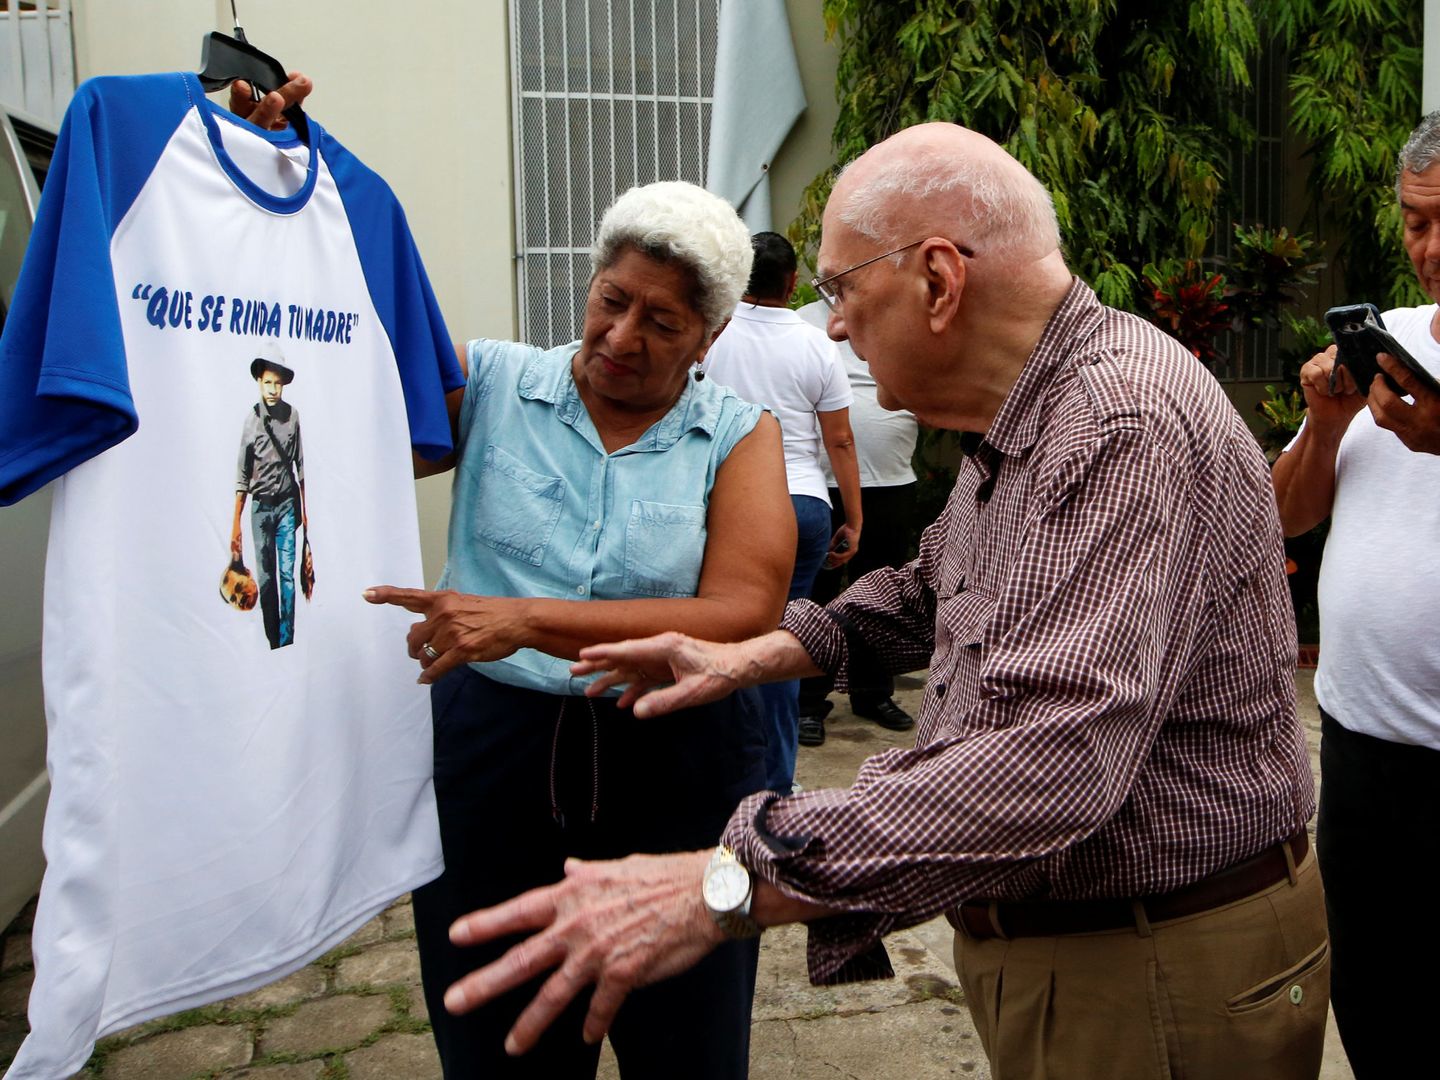 Antiguo presidente de Nicaragua Enrique Bolaños compra una camiseta (Reuters)